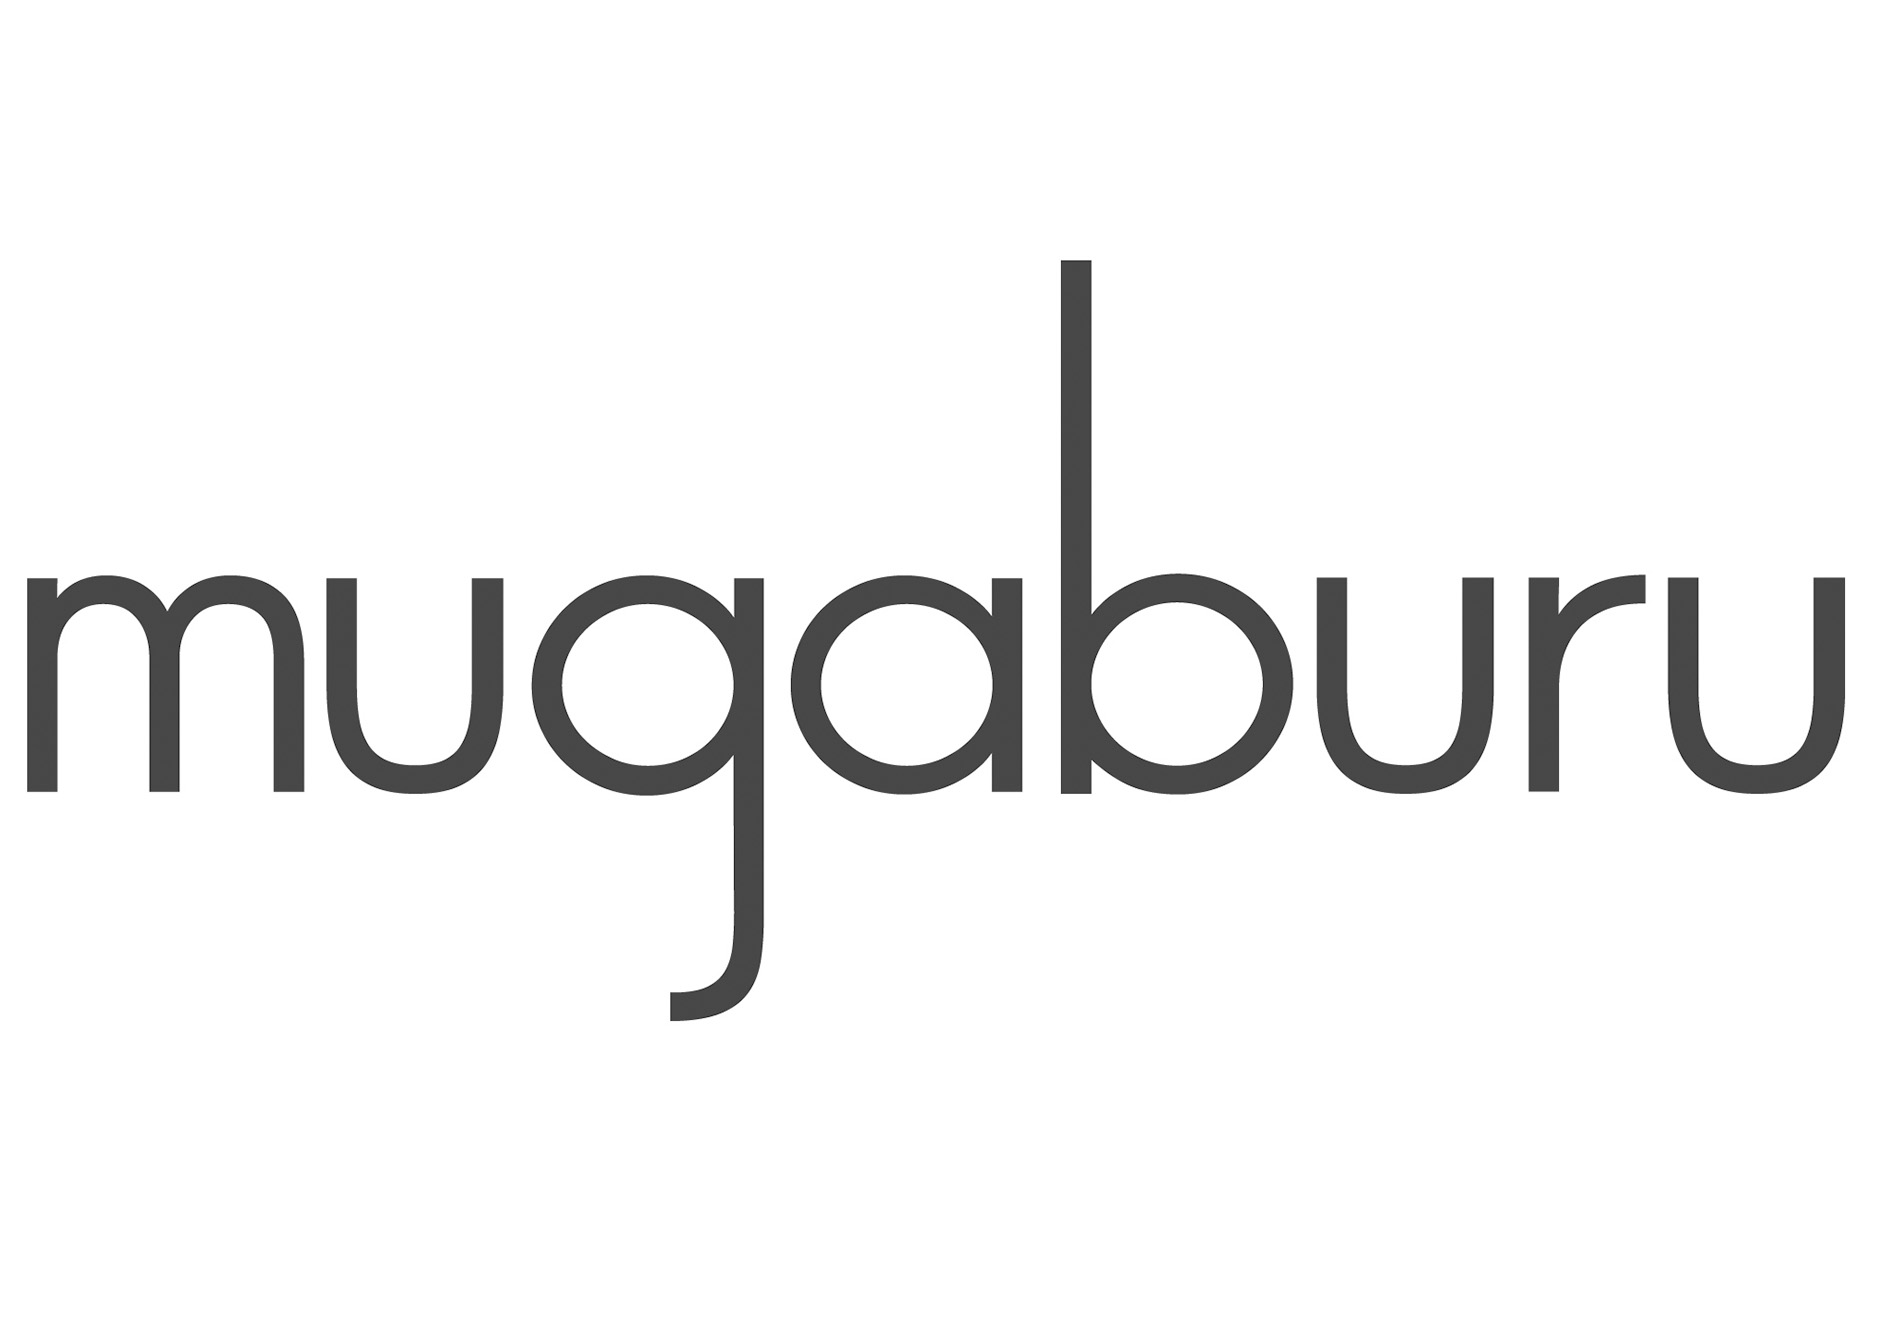 Mugaburu